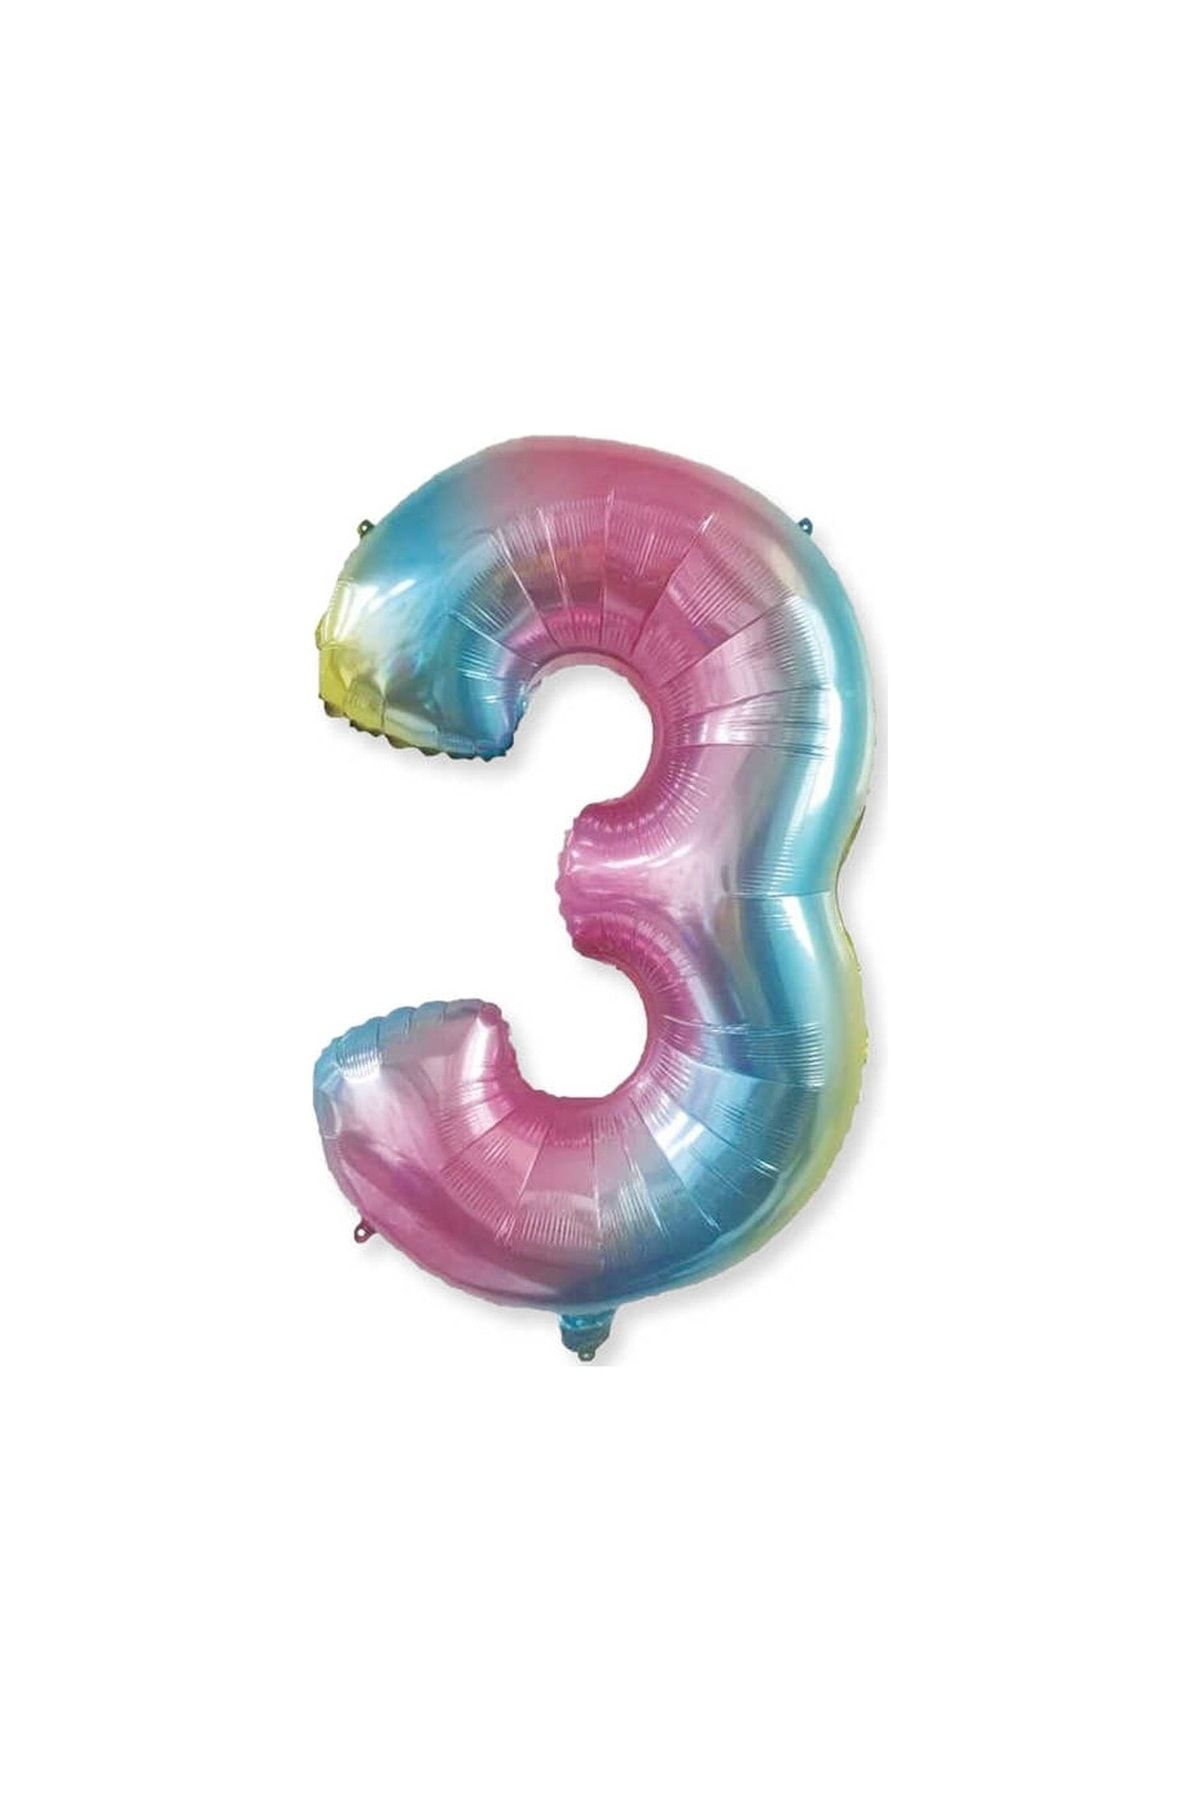 HKNYS 3 Yaş -rakam Sayı Folyo Balon 100 Cm Rengarenk -gökkuşağı Renkli Folyo Balon-helyum Gazı Uyumludur